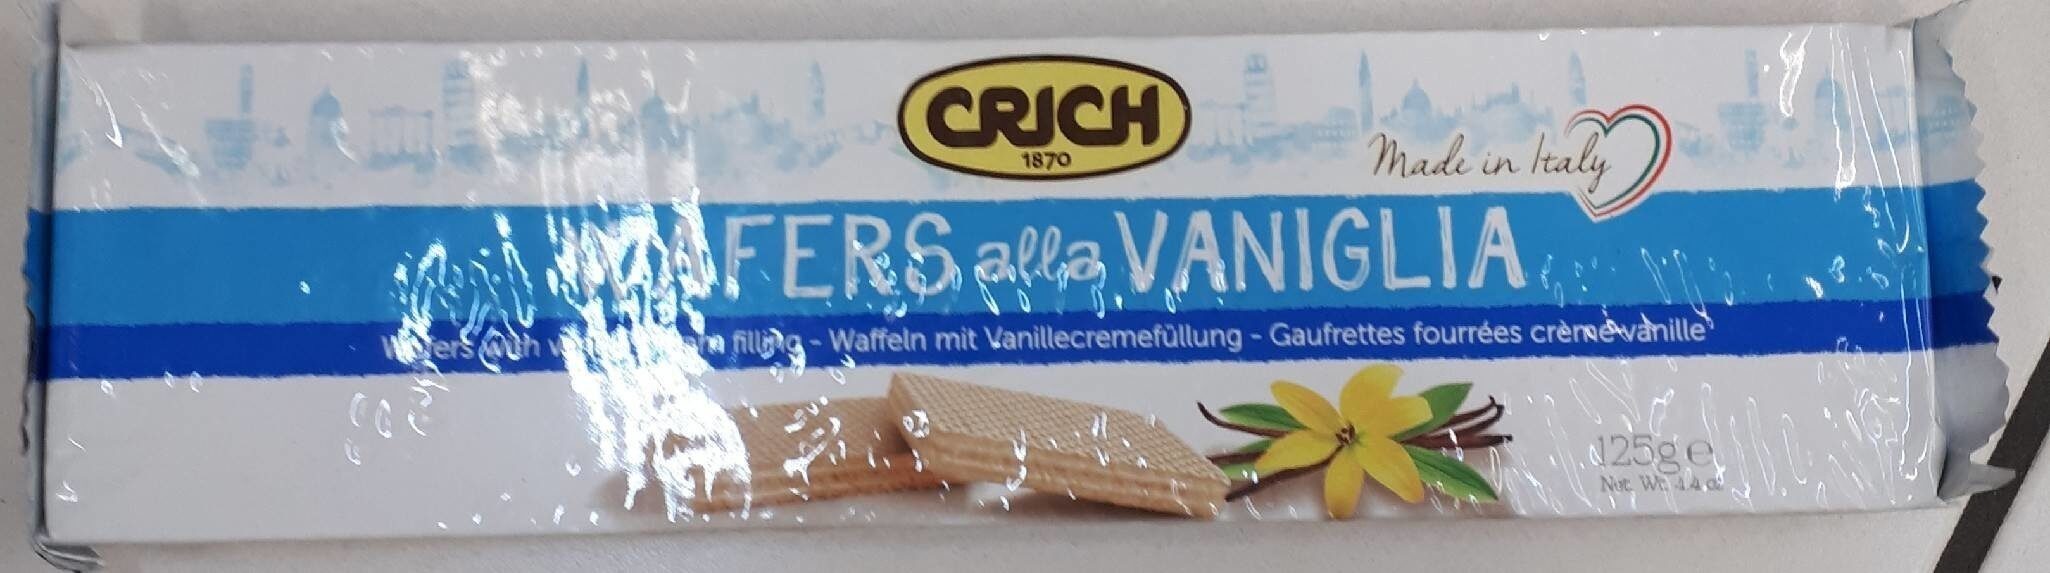 Wafers alla vaniglia - Product - fr